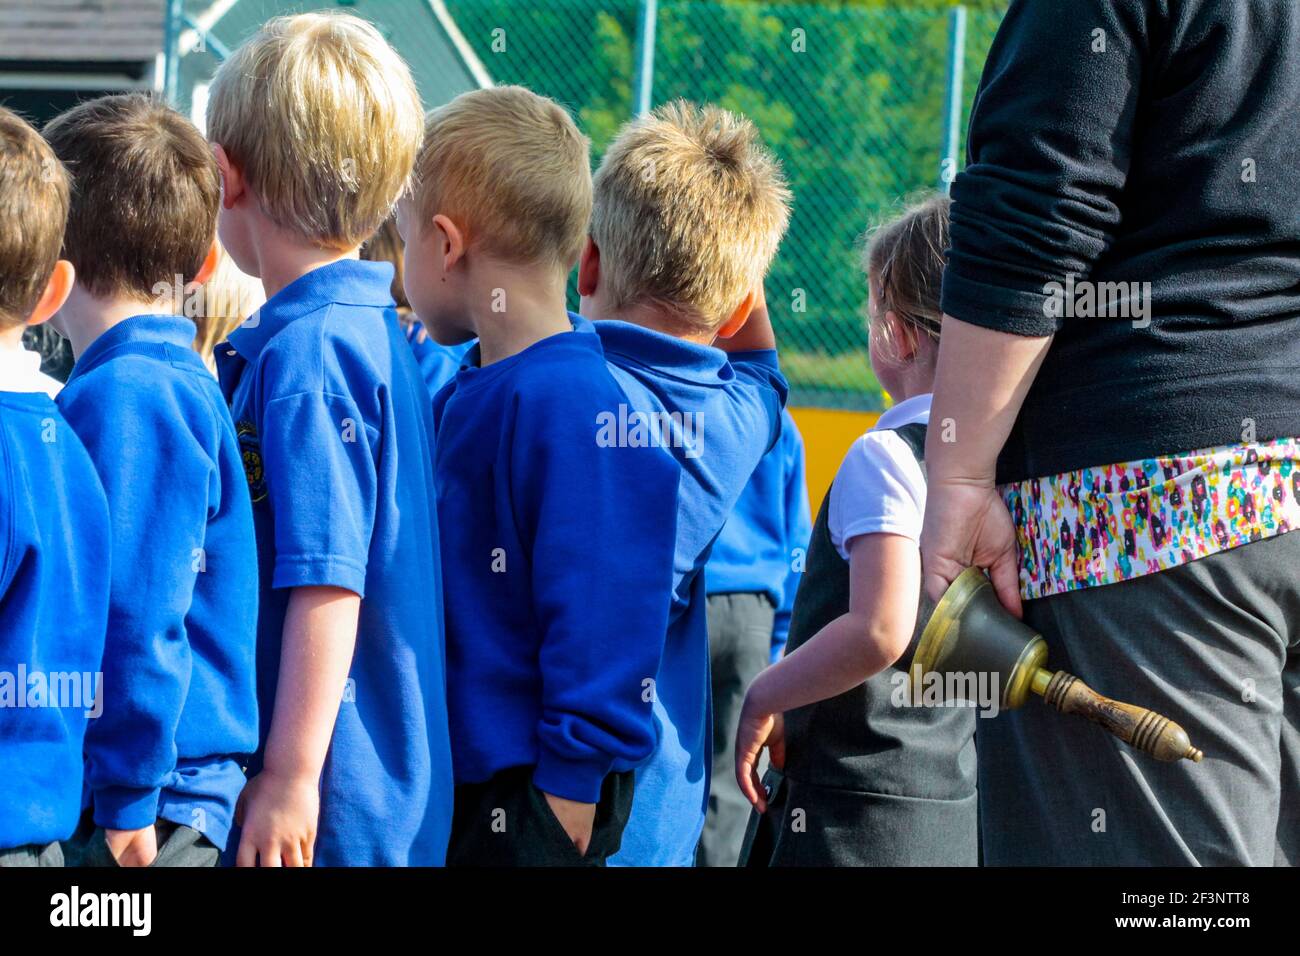 Grupo de niños de escuela primaria en uniforme escolar que regresan al aula después de un descanso en las lecciones al lado de un maestro que sostiene la campana. Foto de stock